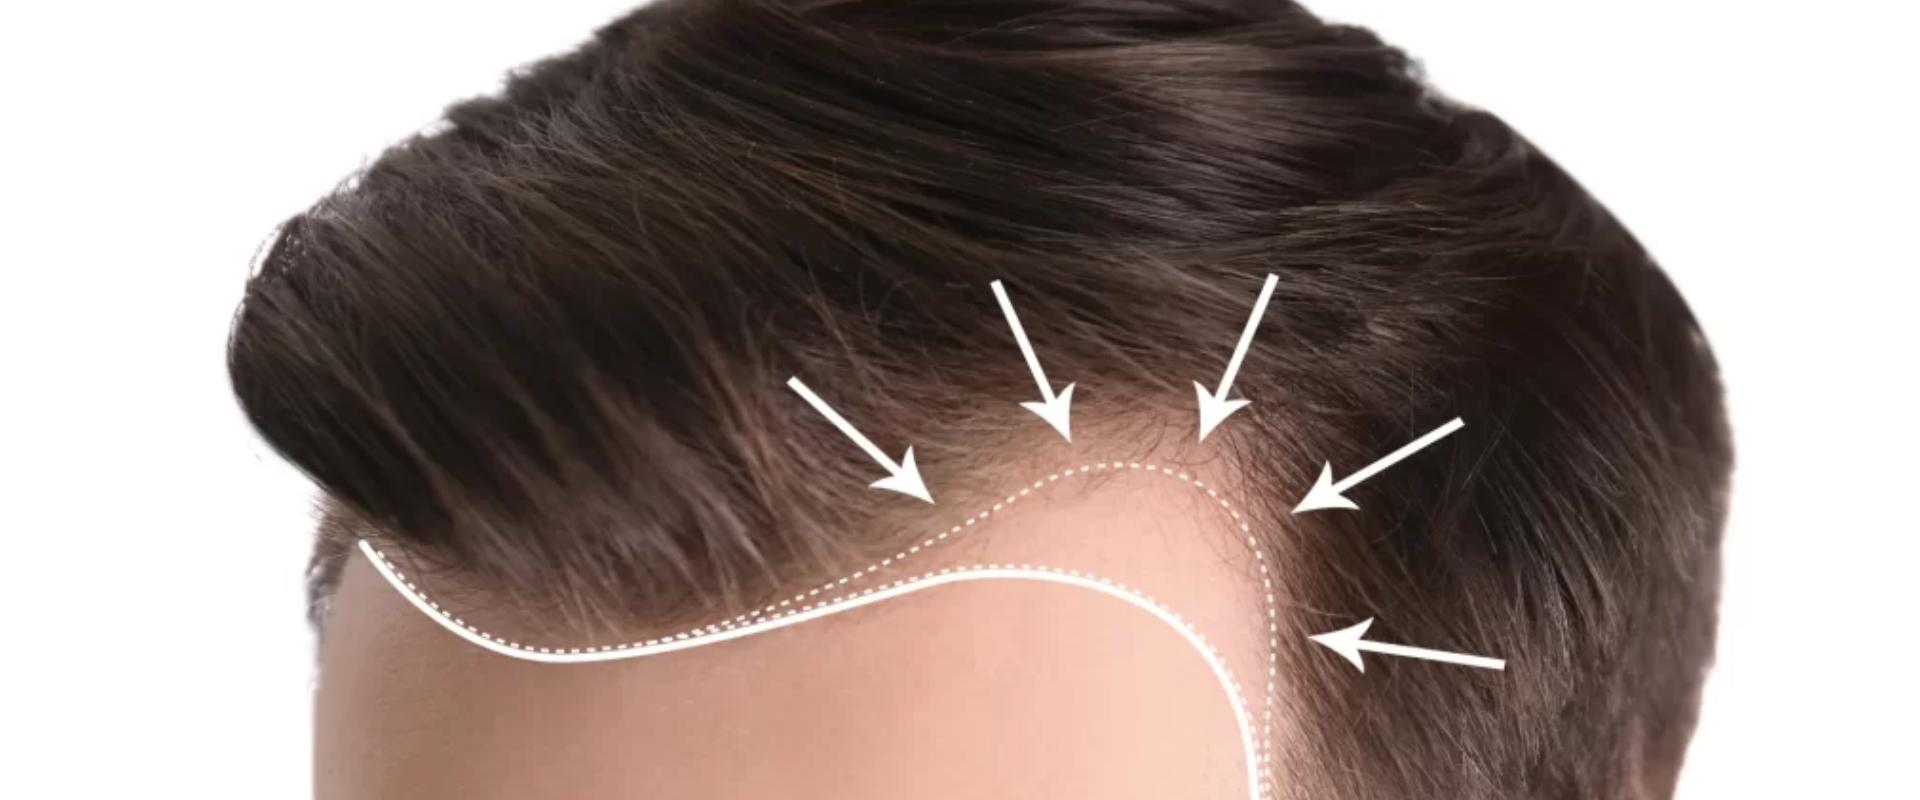 Így alakítható ki az ideális hajvonal hajbeültetéskor